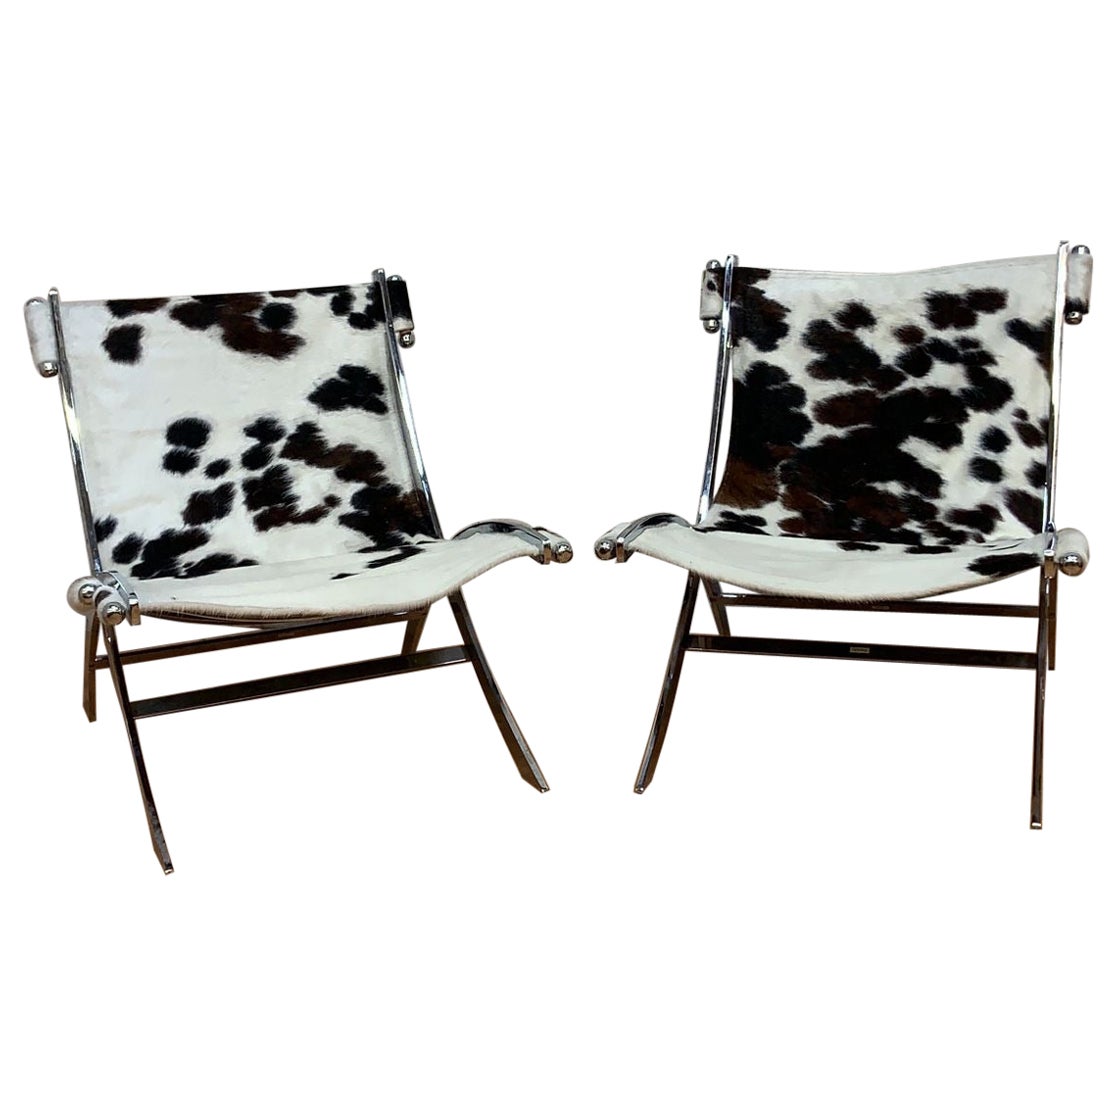 Antonio Citterio Timeless Lounge Scissor Chairs for Flexform Newly Upholstered (chaises à ciseaux de salon intemporelles pour Flexform)